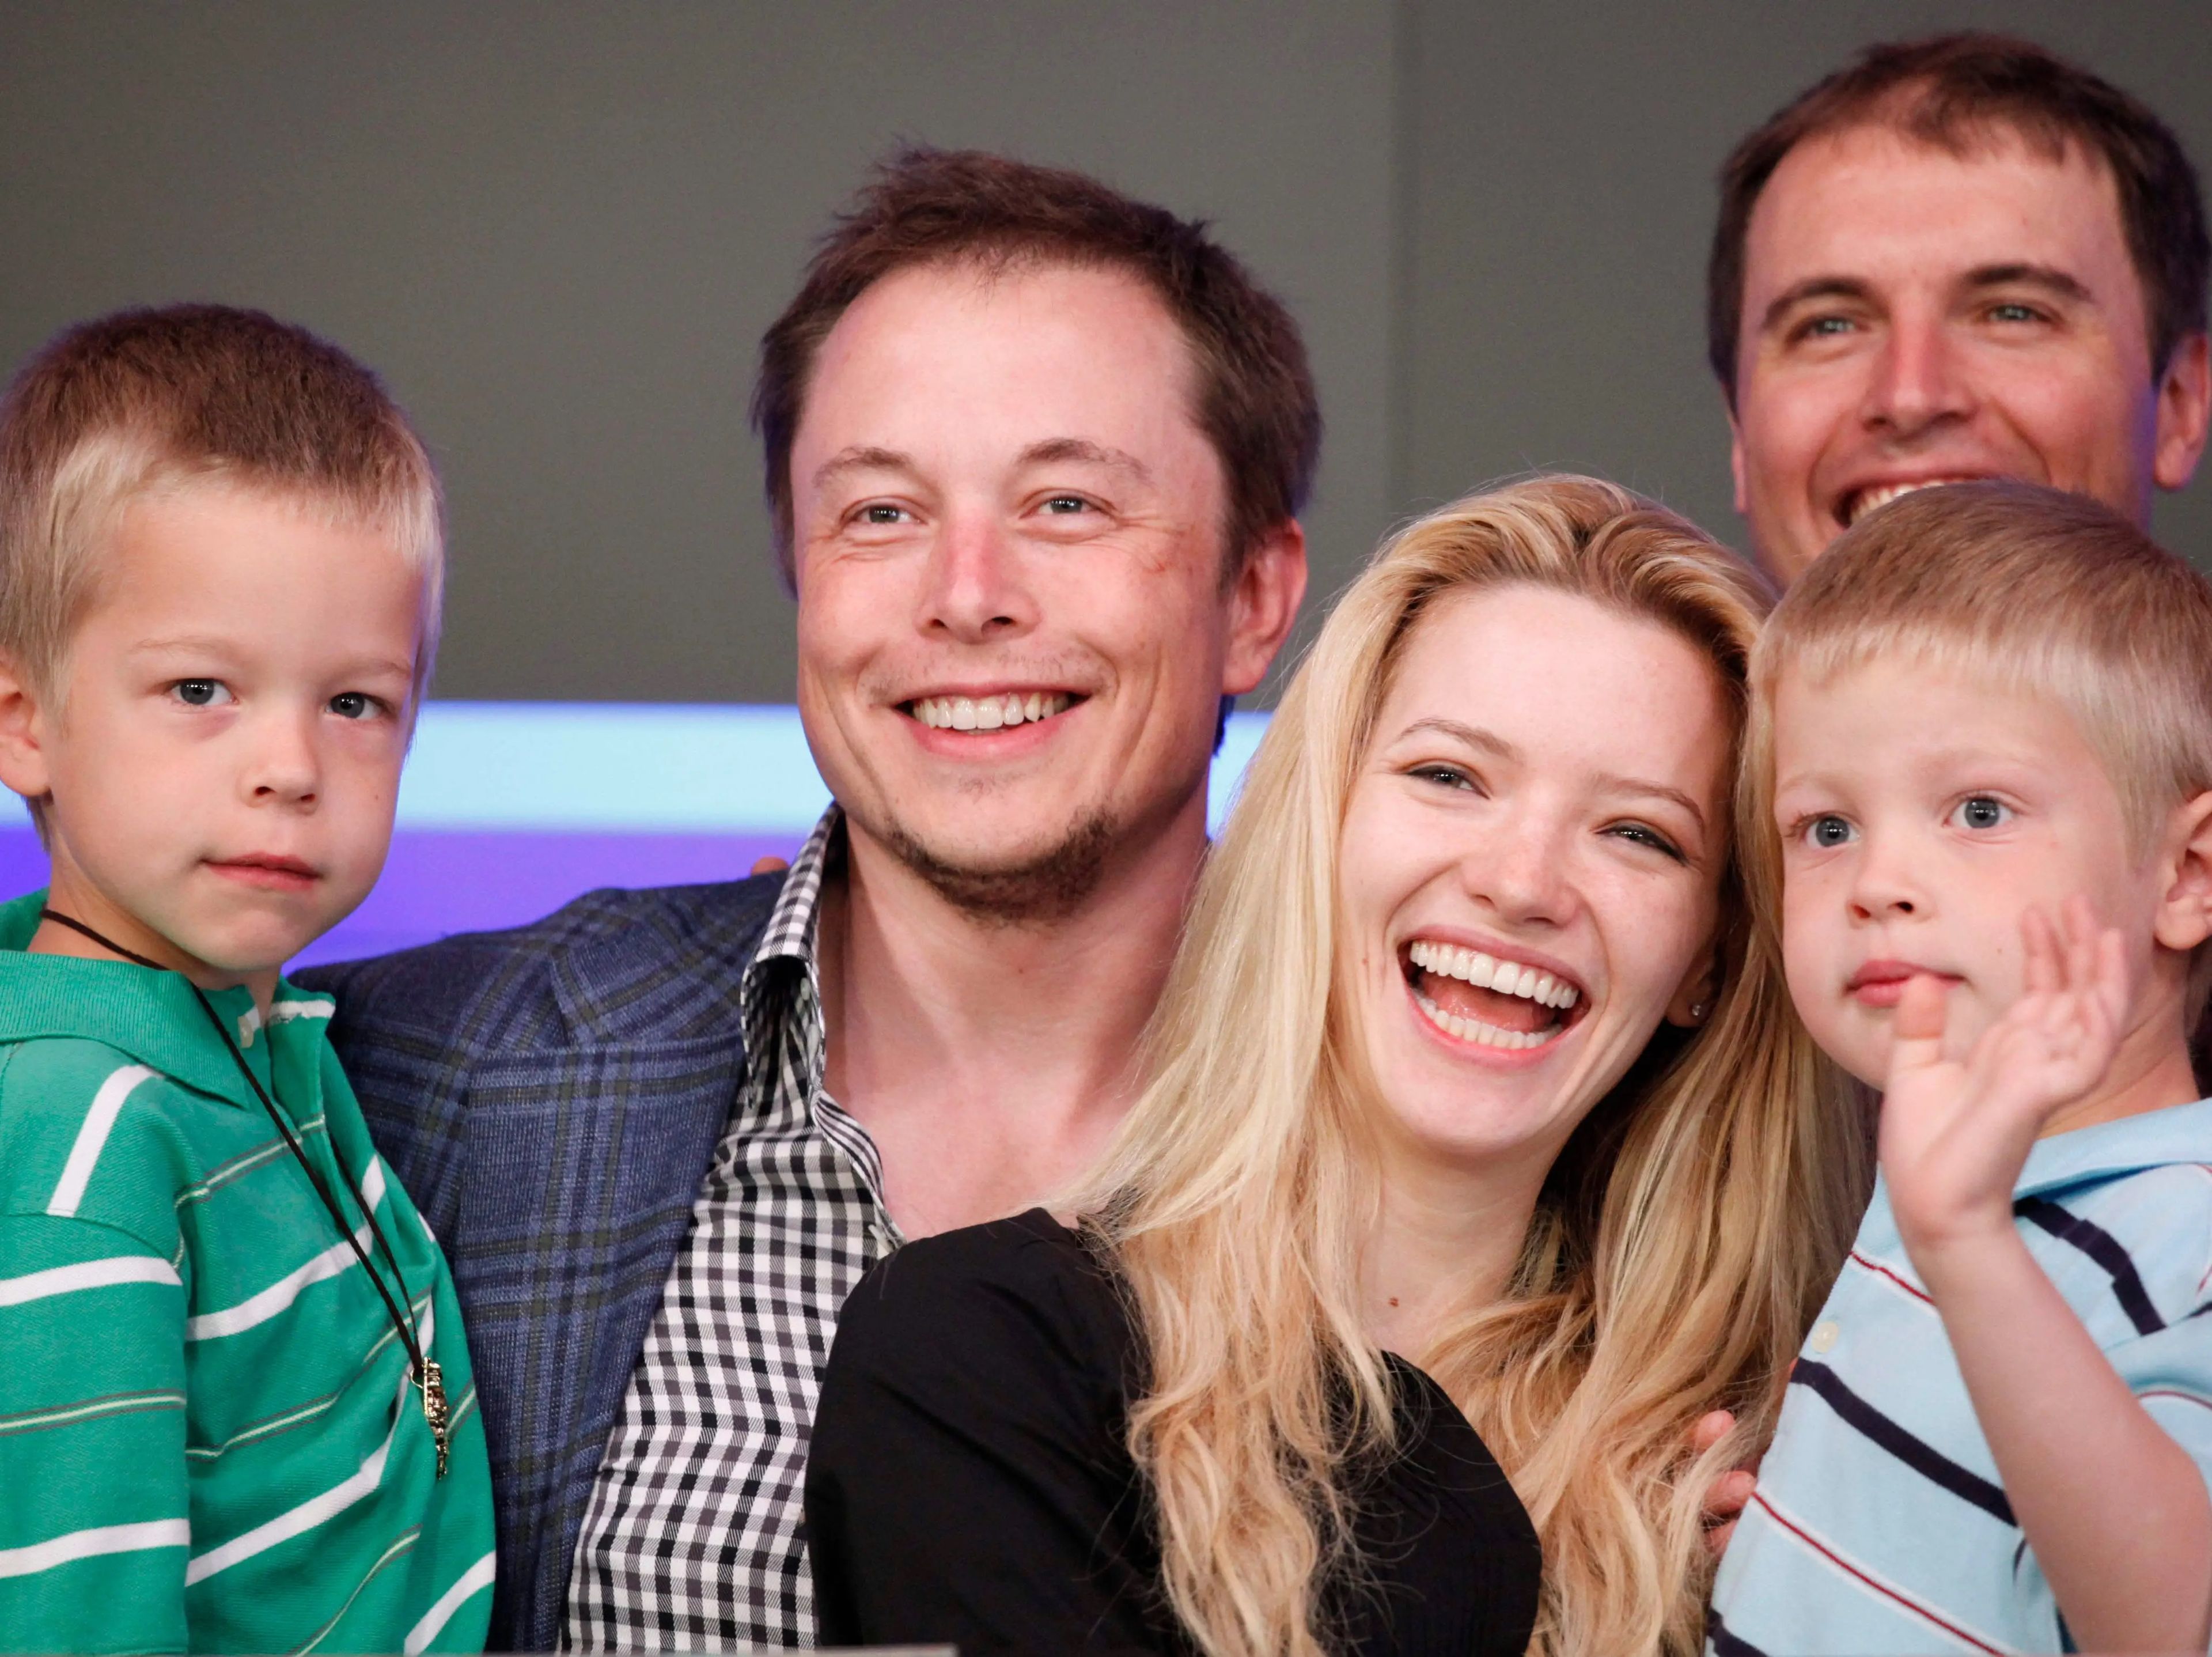 El multimillonario Elon Musk ha promovido ideas pronatalistas, tuiteando a menudo sobre la natalidad y el descenso de la población.